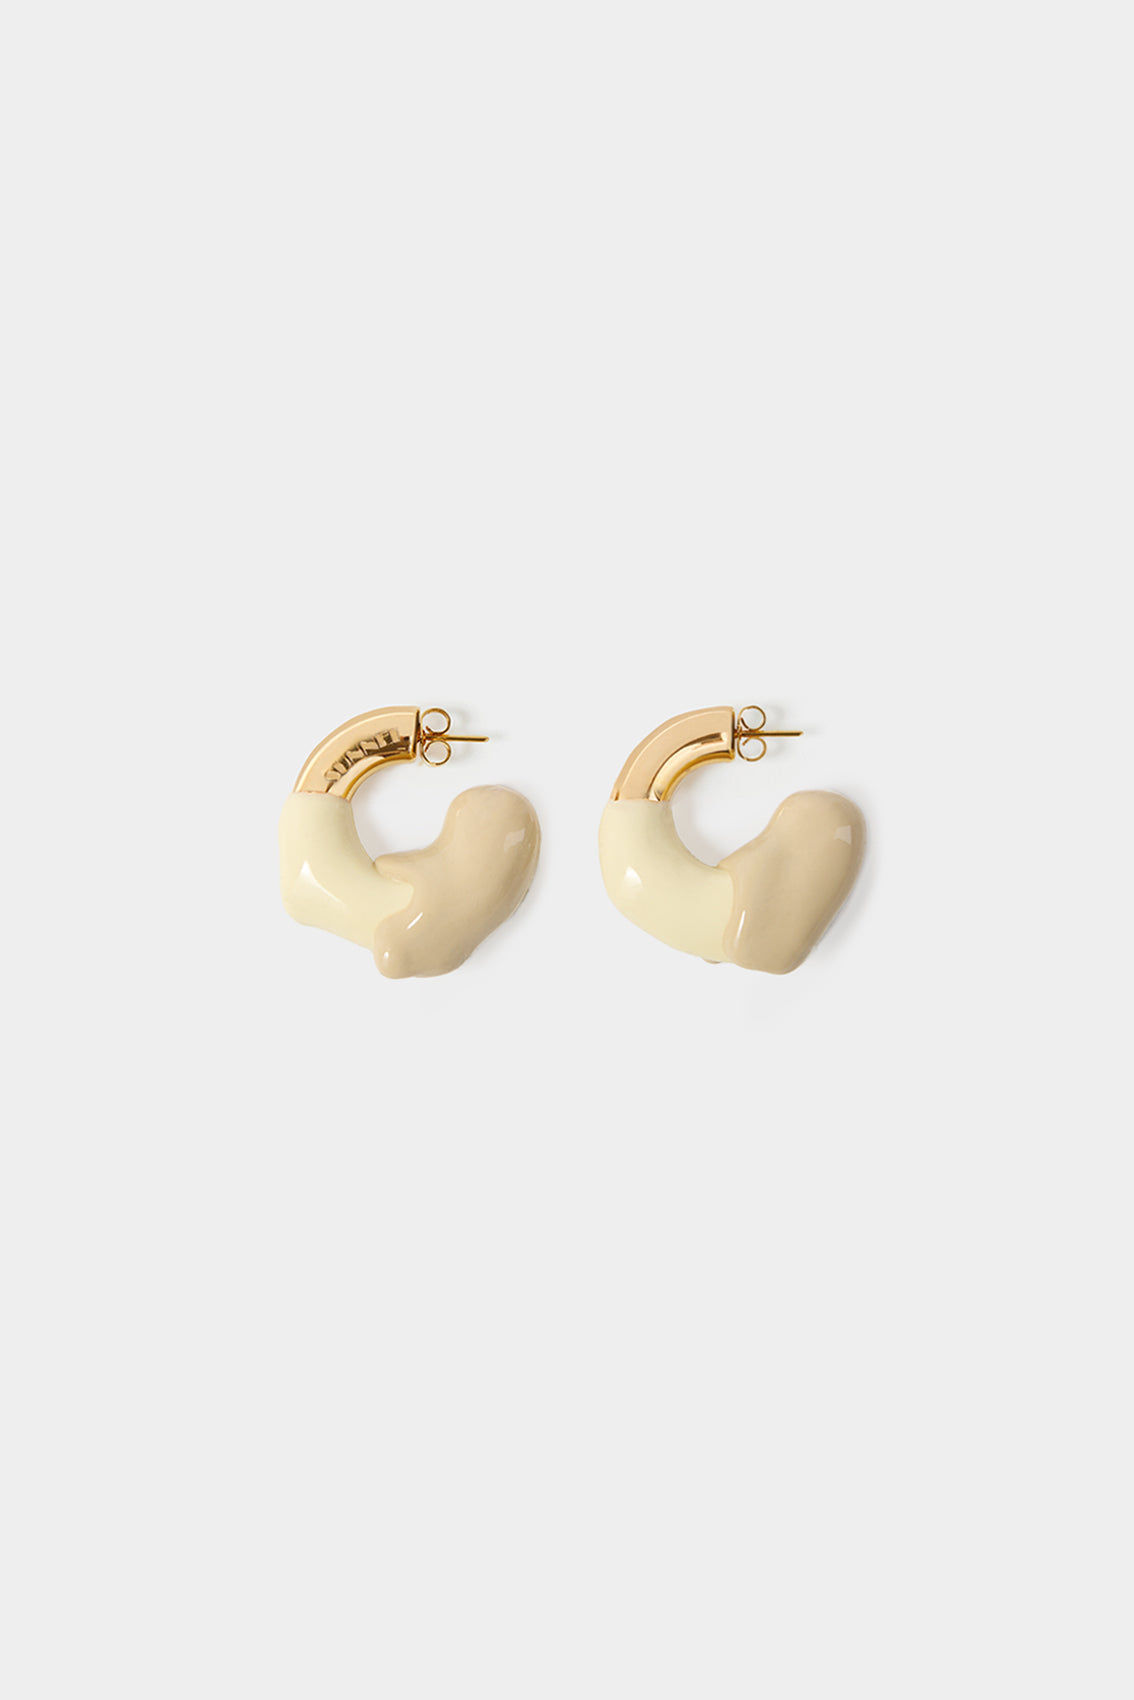 SMALL RUBBERIZED EARRINGS GOLD / cream & beige